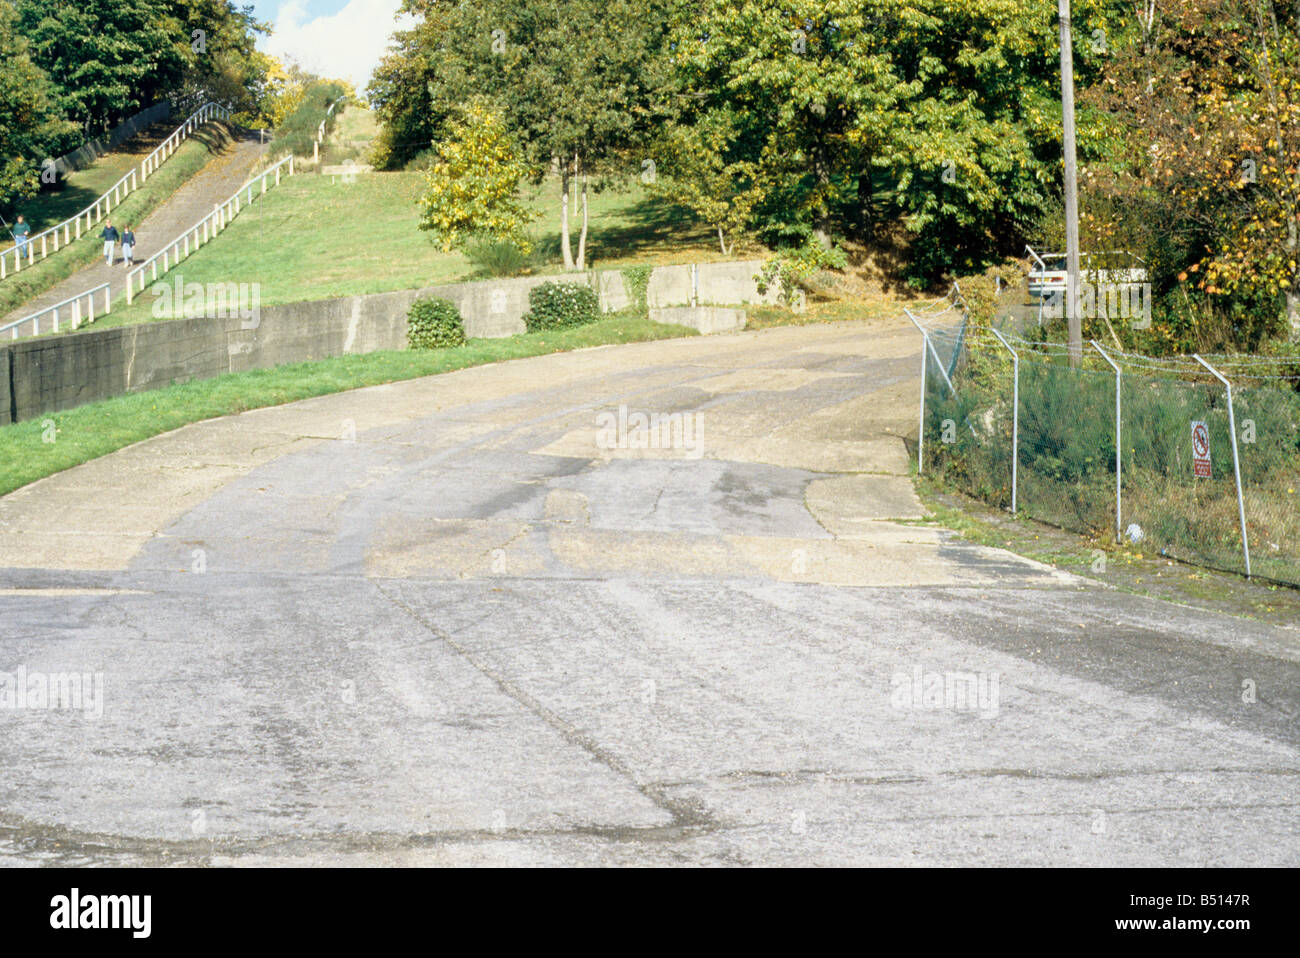 Brooklands Rennstrecke in der Nähe von Weybridge, Surrey, flachen Teil des Kurses, erbaut 1907, mit Test-Hügel auf der linken Seite. Stockfoto